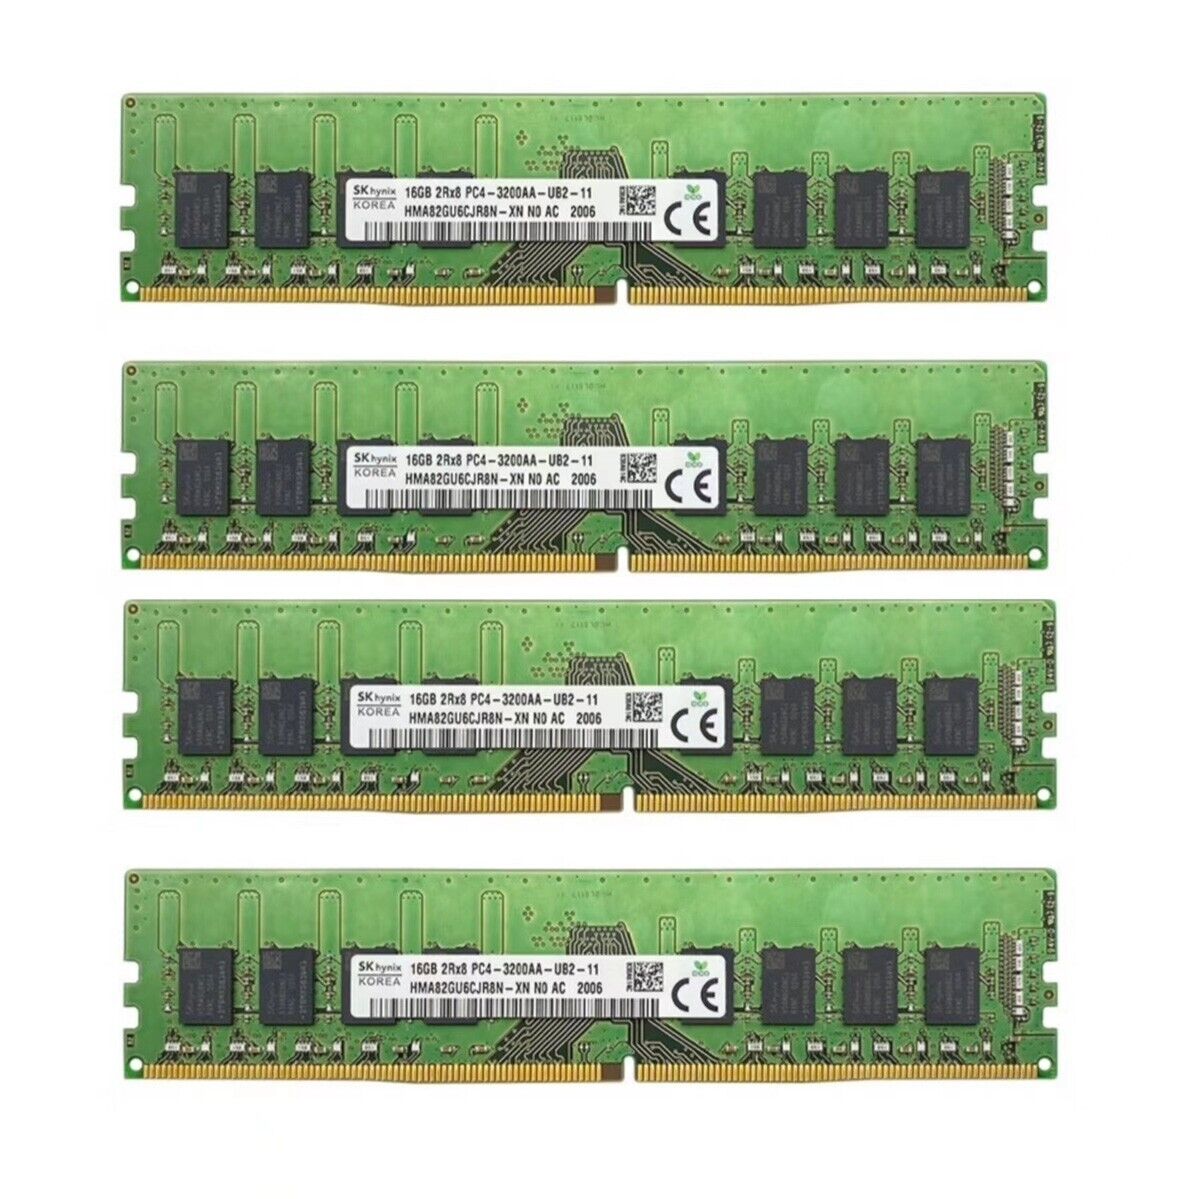 Hynix 64GB 4X16GB DDR4 3200MHz PC4-25600 2RX8 UDIMM Memory Ram HMA82GU6CJR8N-XN